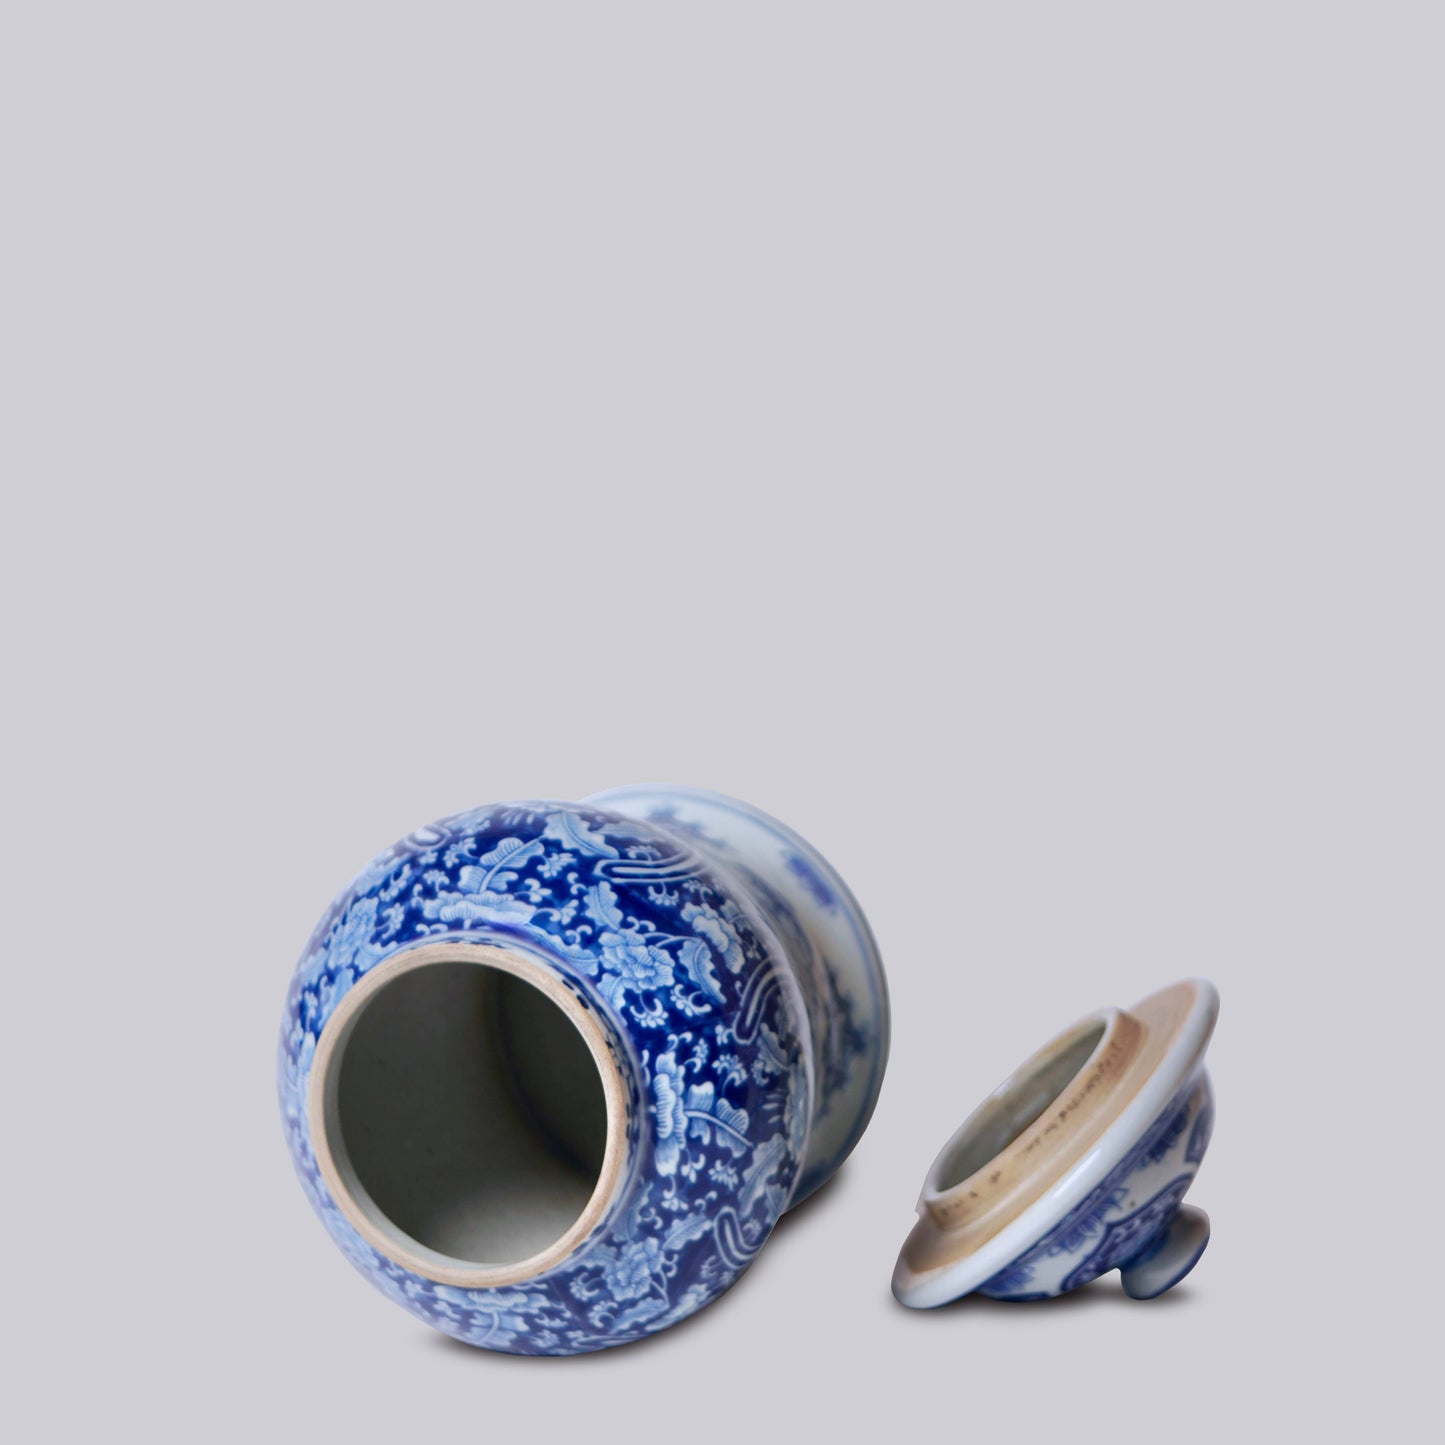 Blue and White Porcelain Floral Cartouche Temple Jar, 10"